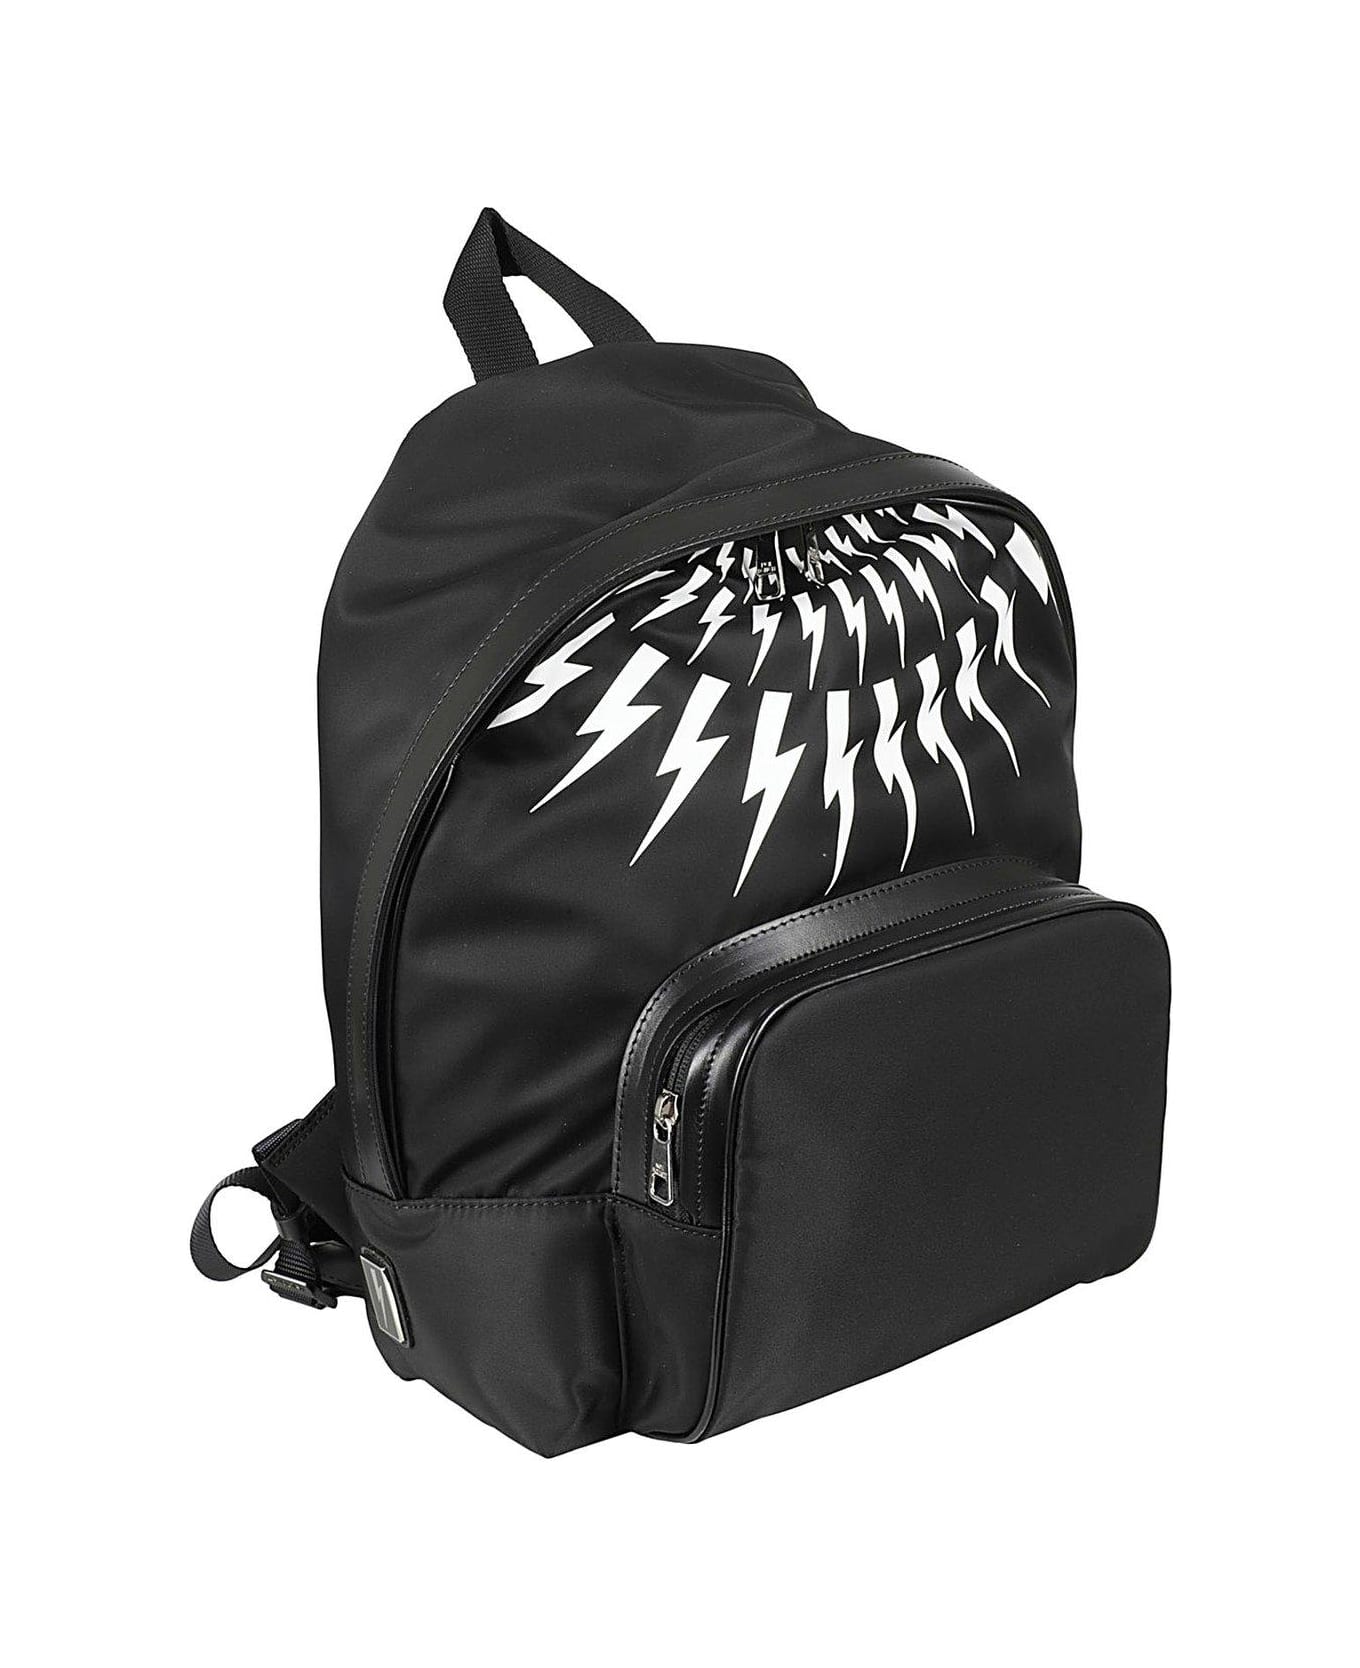 Neil Barrett Thunder Printed Zipped Backpack - Black White バックパック